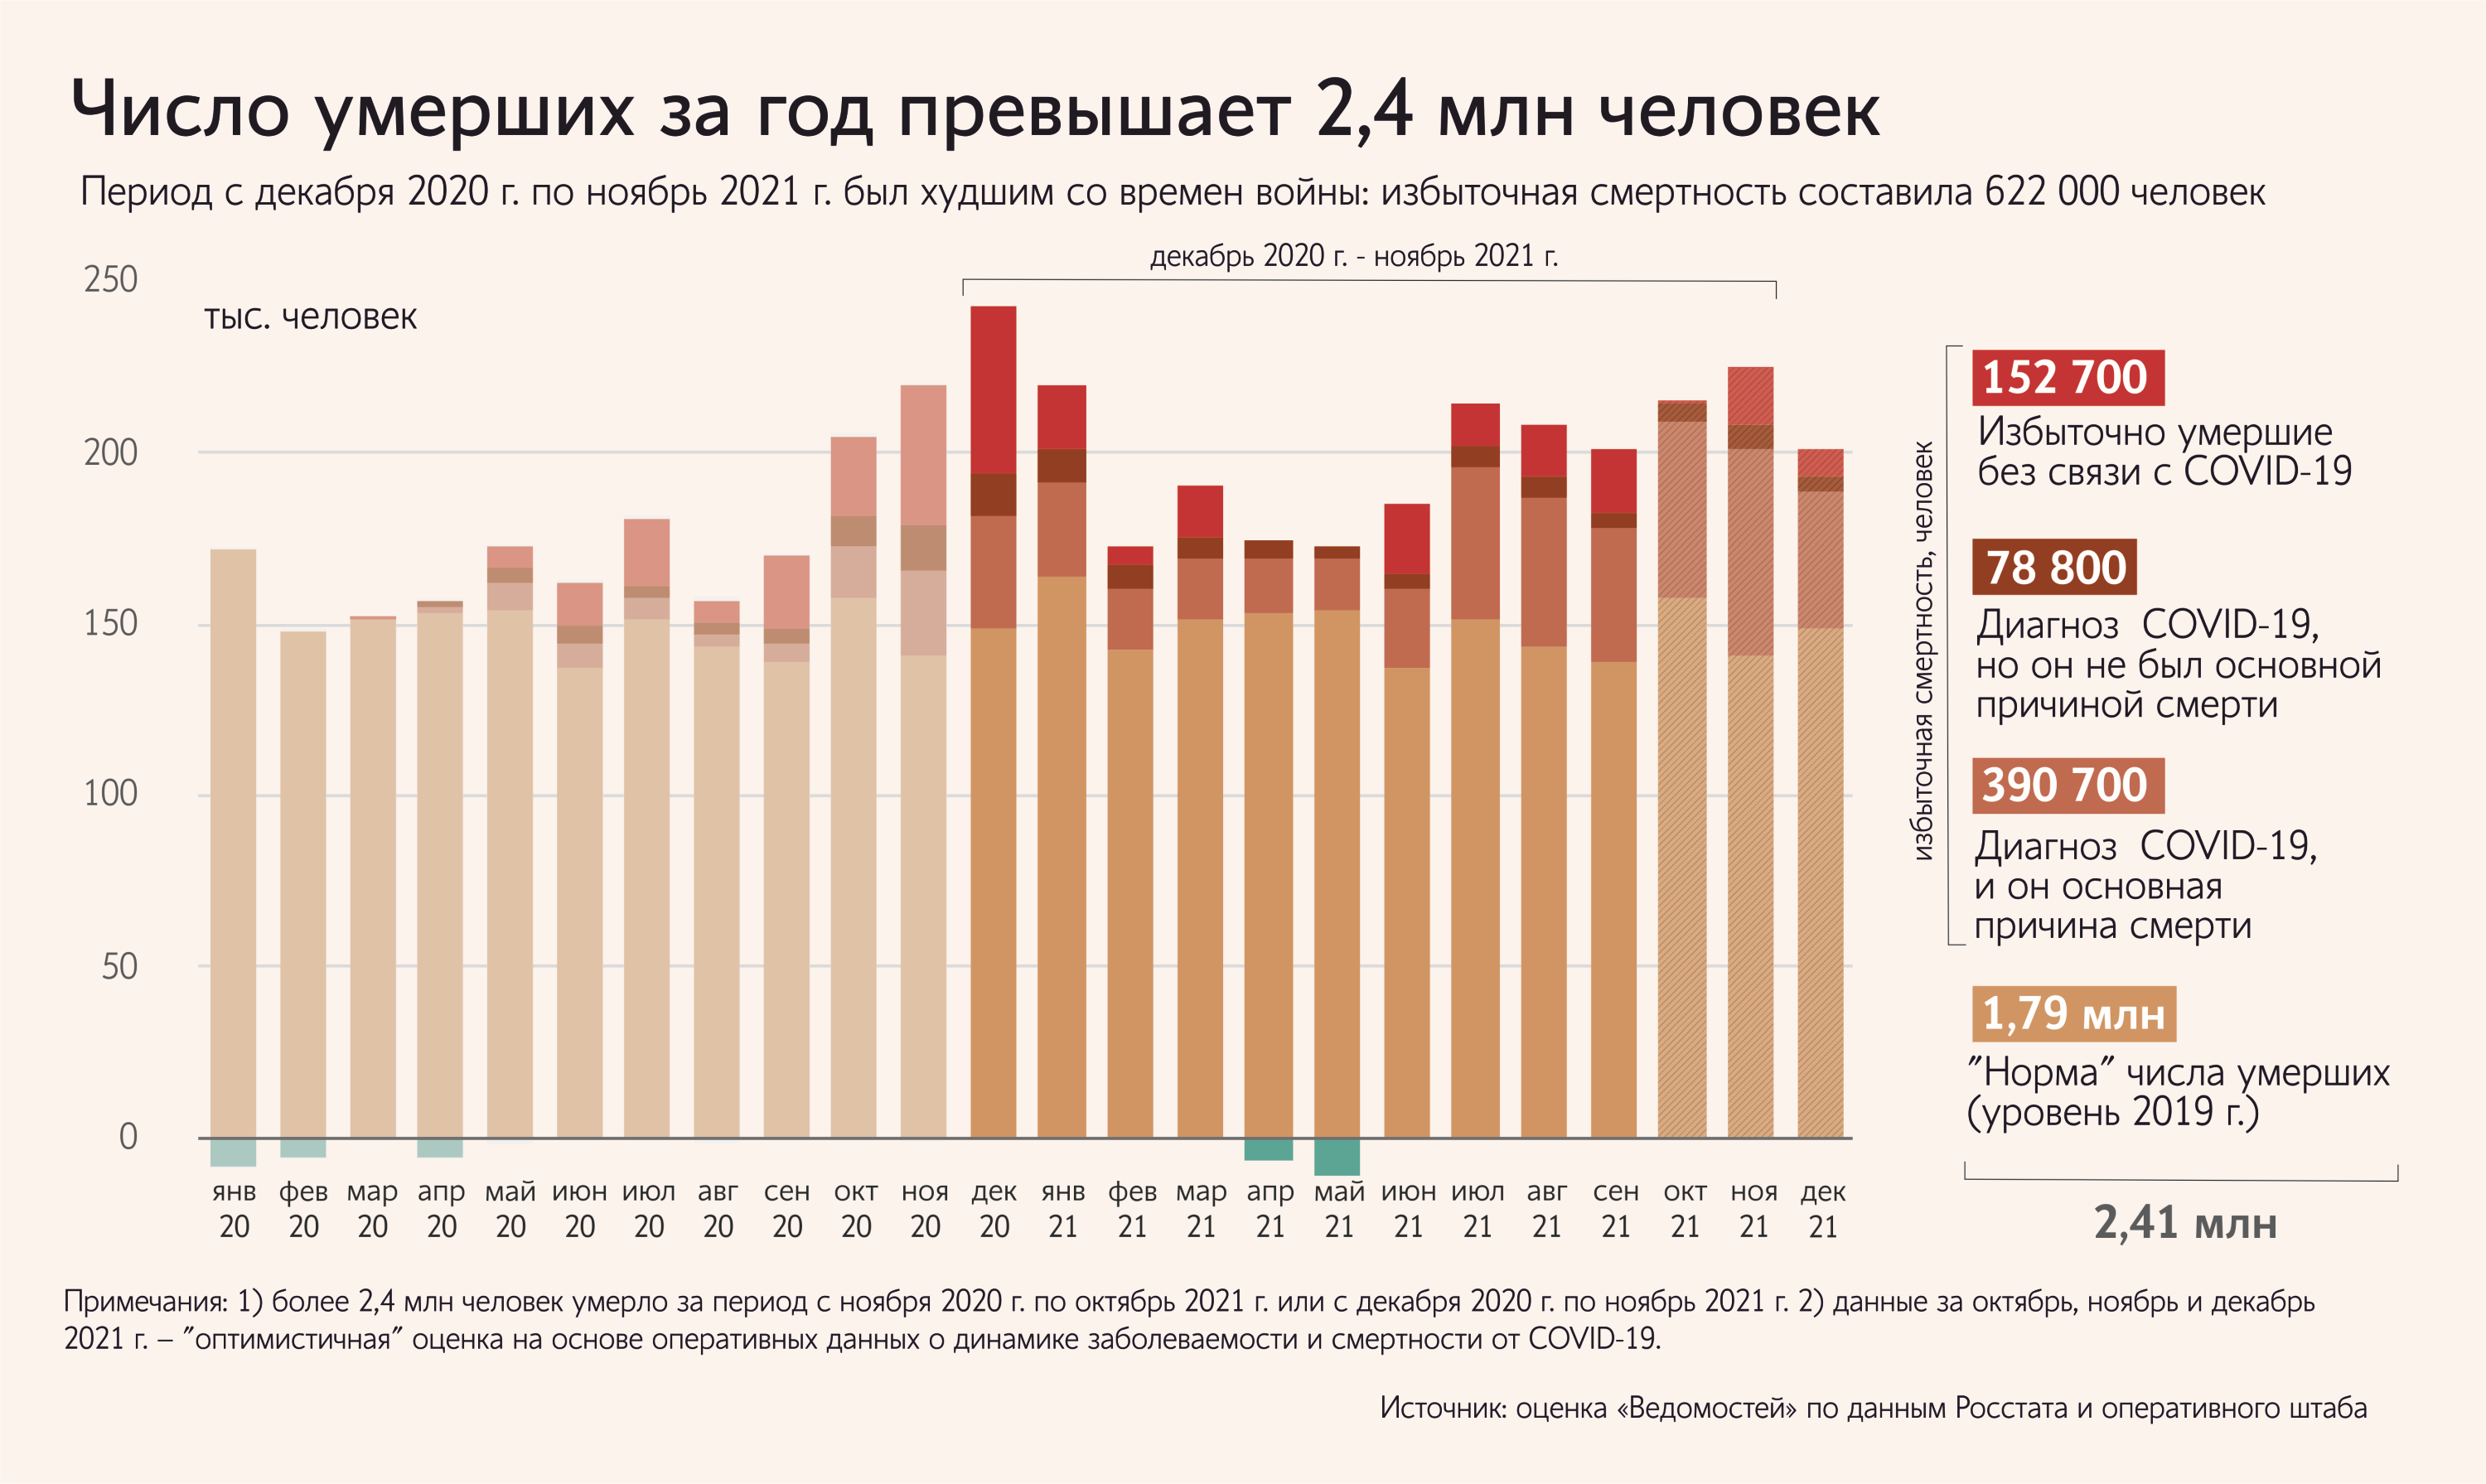 Смертность в россии в последние годы